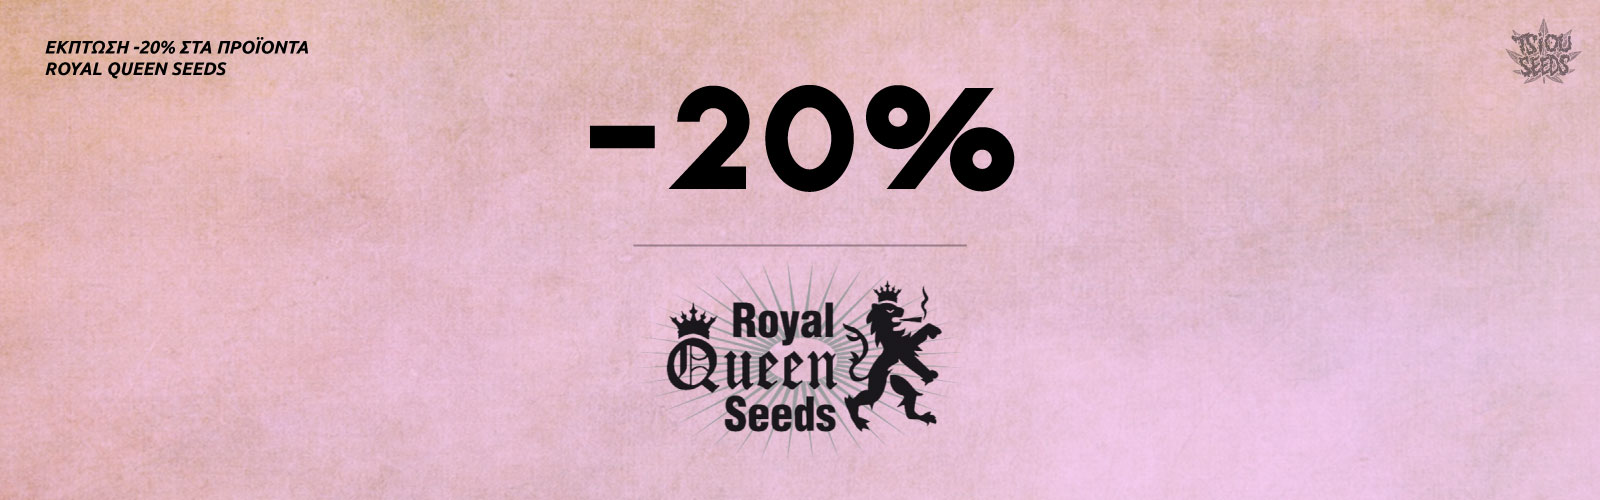 Σπόροι Προσφορά Royal Queen Seeds RQS -20%